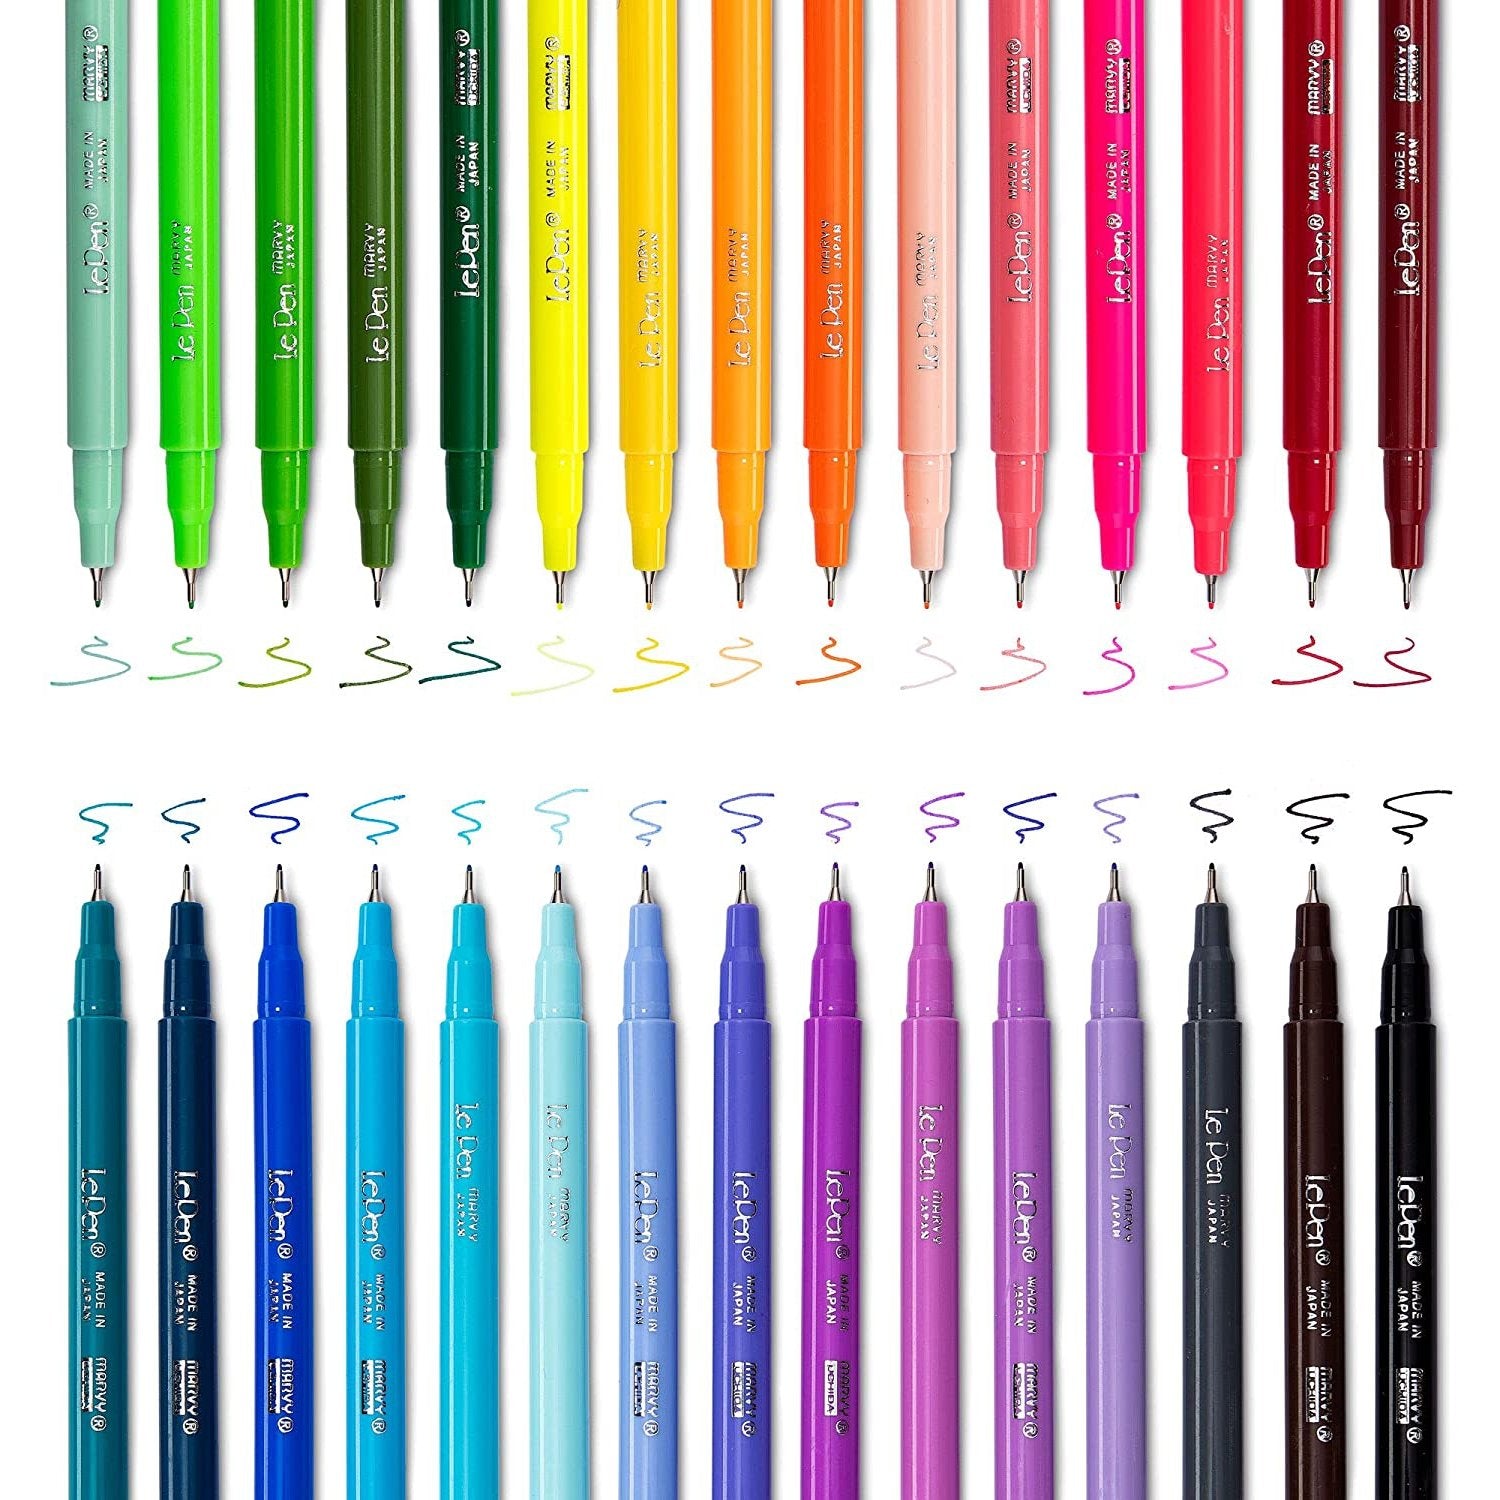 https://www.littlegiantkidz.com/cdn/shop/files/Le-Pens-Multicolor-Set-0_3mm-Fine-Point-Pens-Smudge-Proof-Ink-30-Count-Basic-Neon-and-Pastel-Colors-Montrose-Colors-Inc-2.jpg?v=1690322003&width=1500